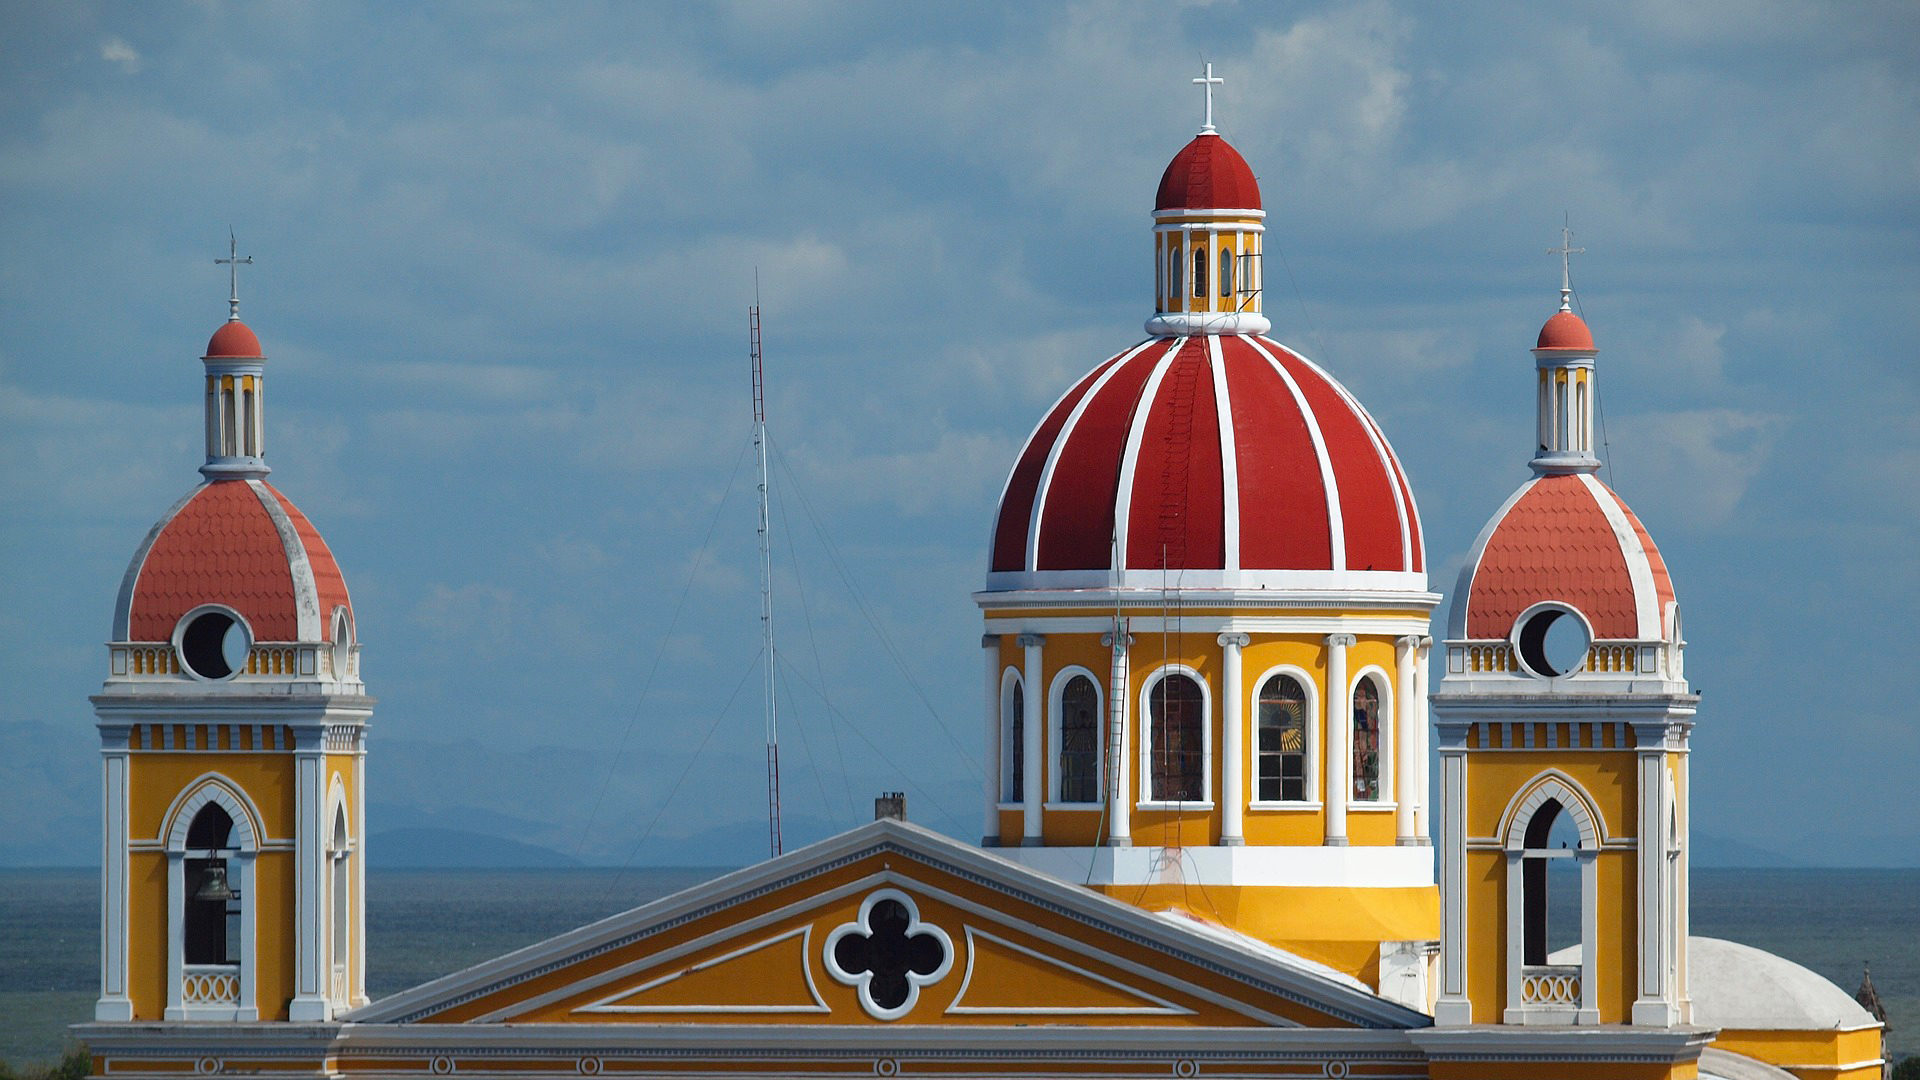 Le dome de la cathédrale de Grenade, à l'ouest du Nicaragua | © Pixabay